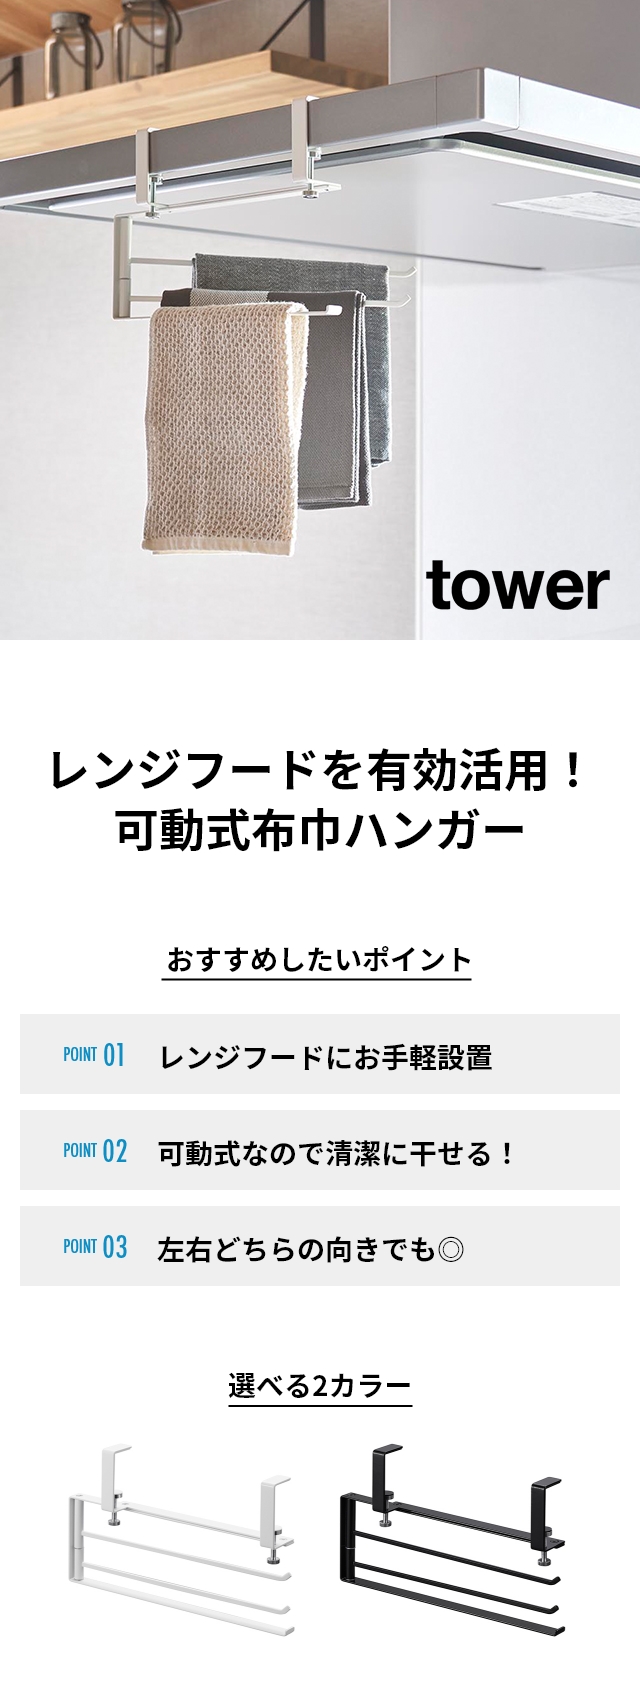 tower(タワー) レンジフード横可動式布巾ハンガー